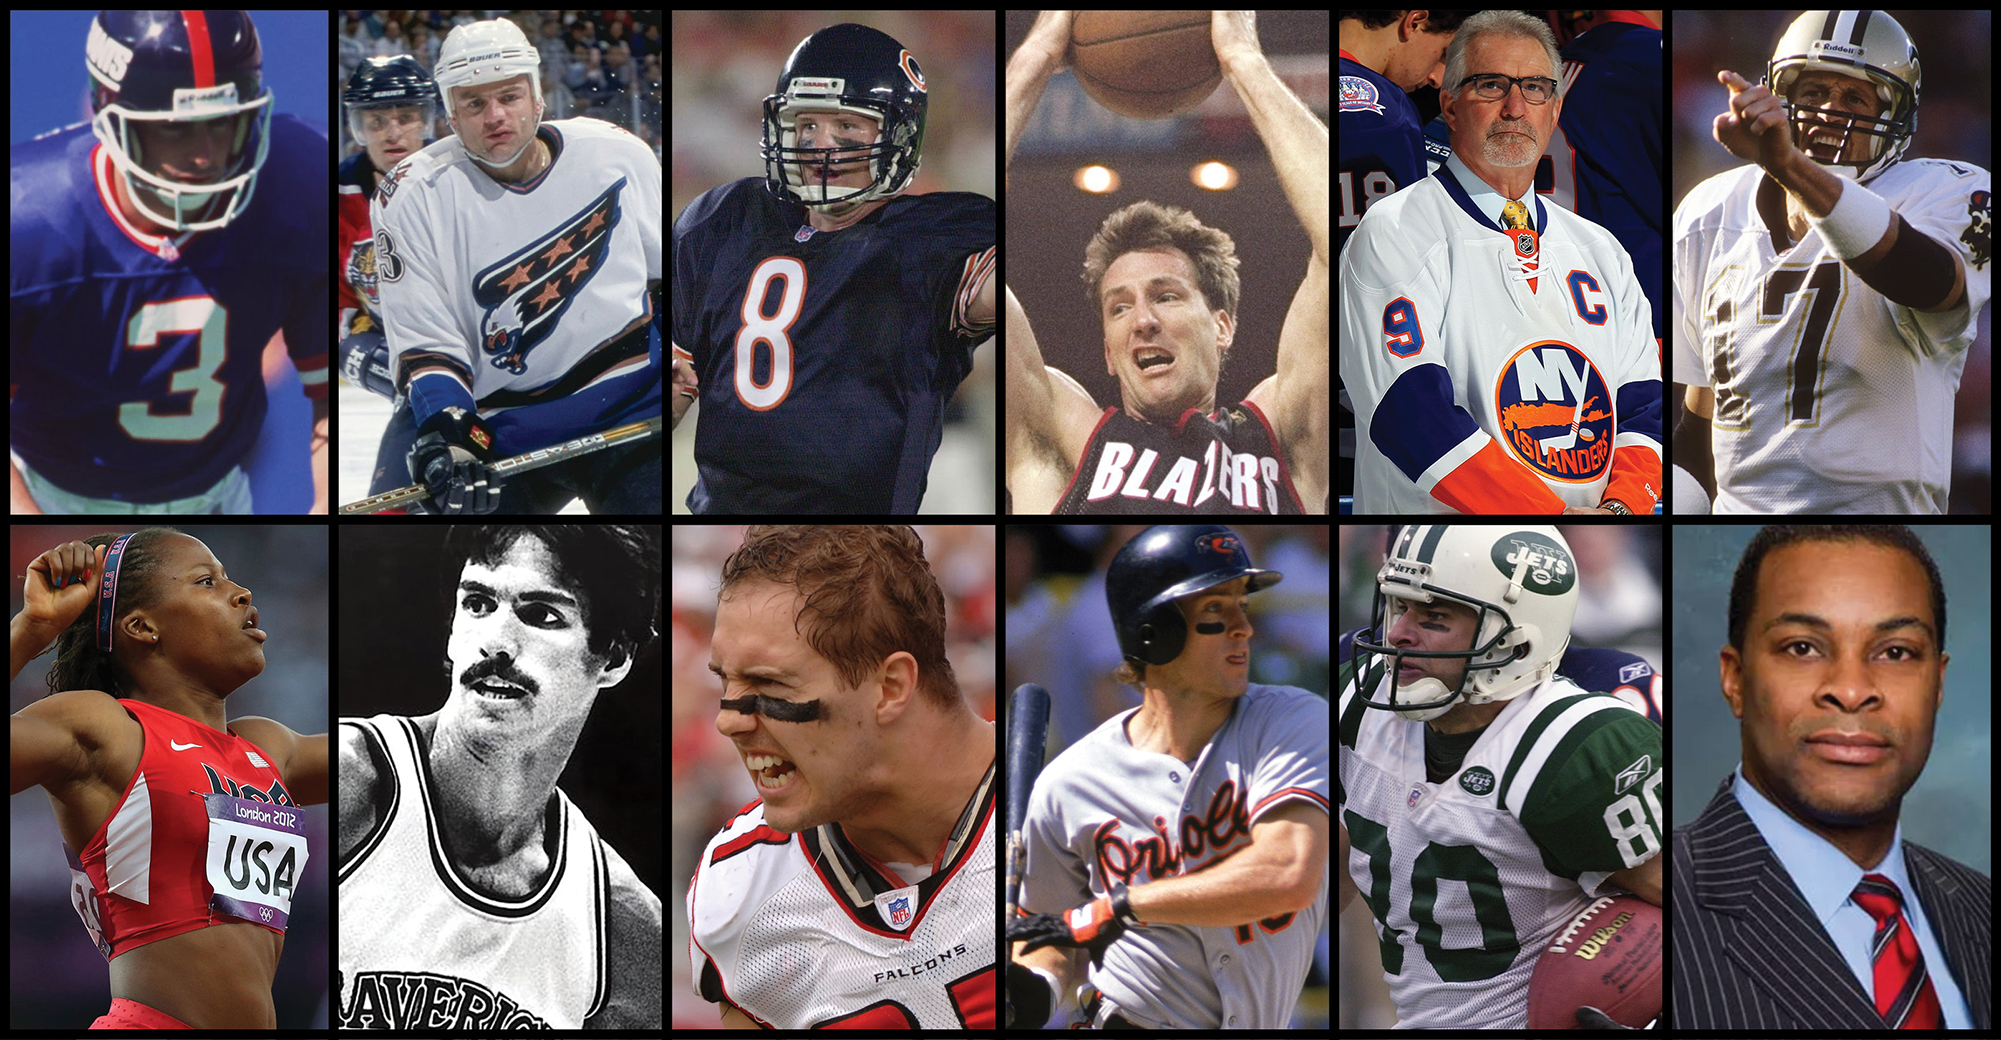 Chris Dudley, Wayne Chrebet, Jim Everett: Athletes Who Became Advisors